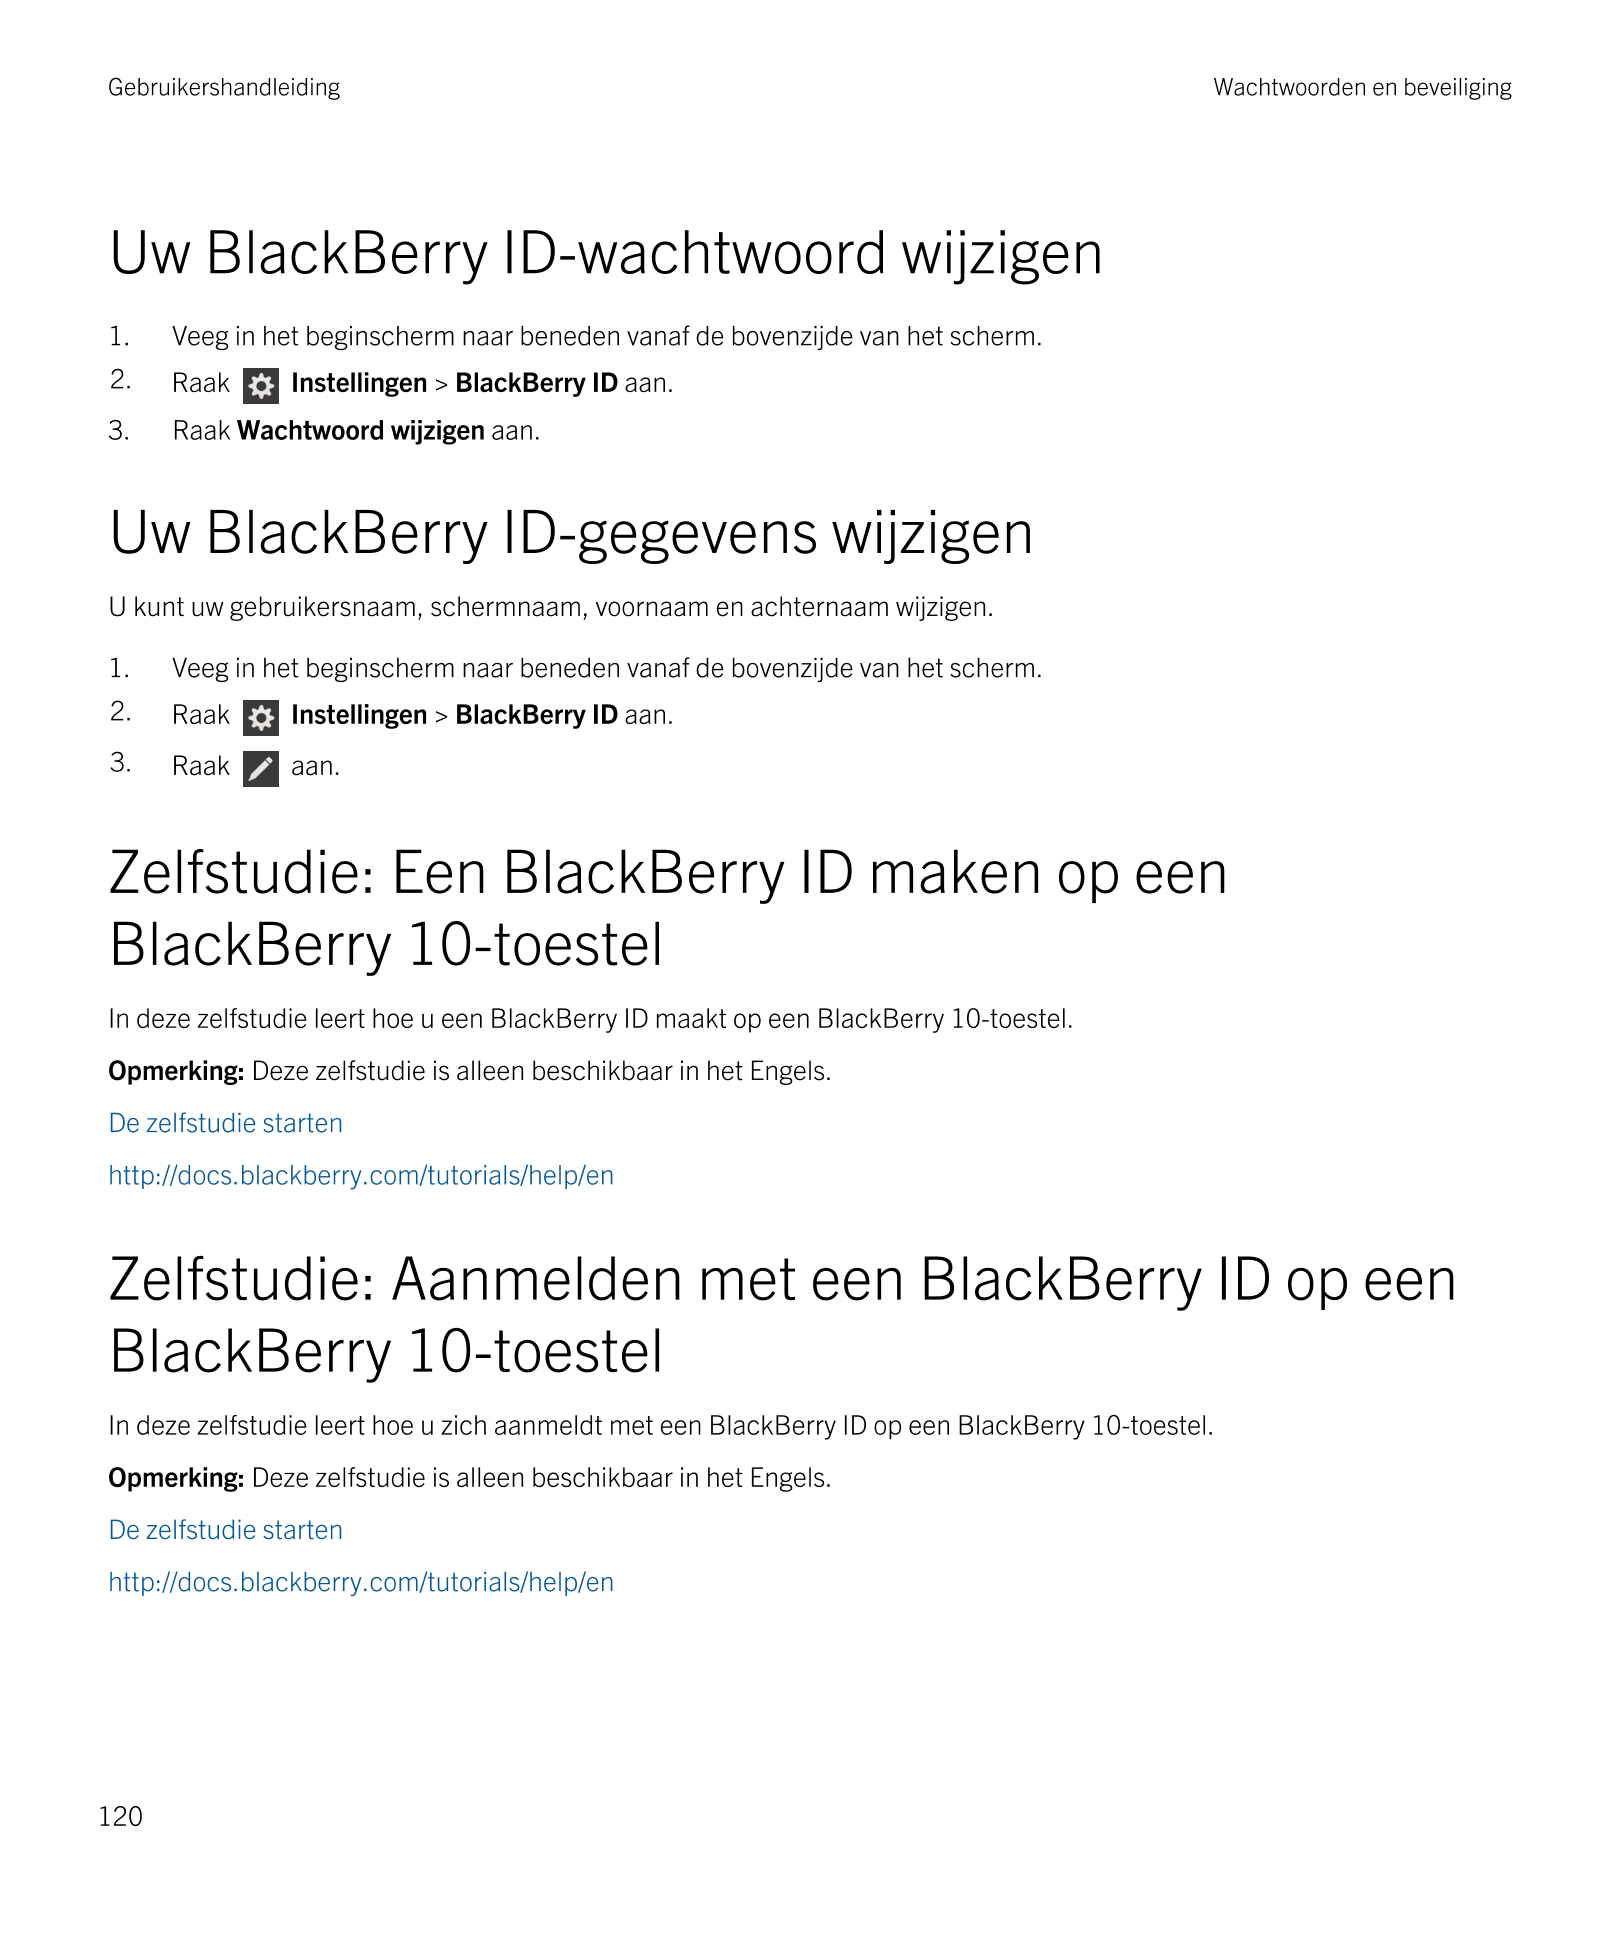 Gebruikershandleiding Wachtwoorden en beveiliging
Uw  BlackBerry ID-wachtwoord wijzigen
1. Veeg in het beginscherm naar beneden 